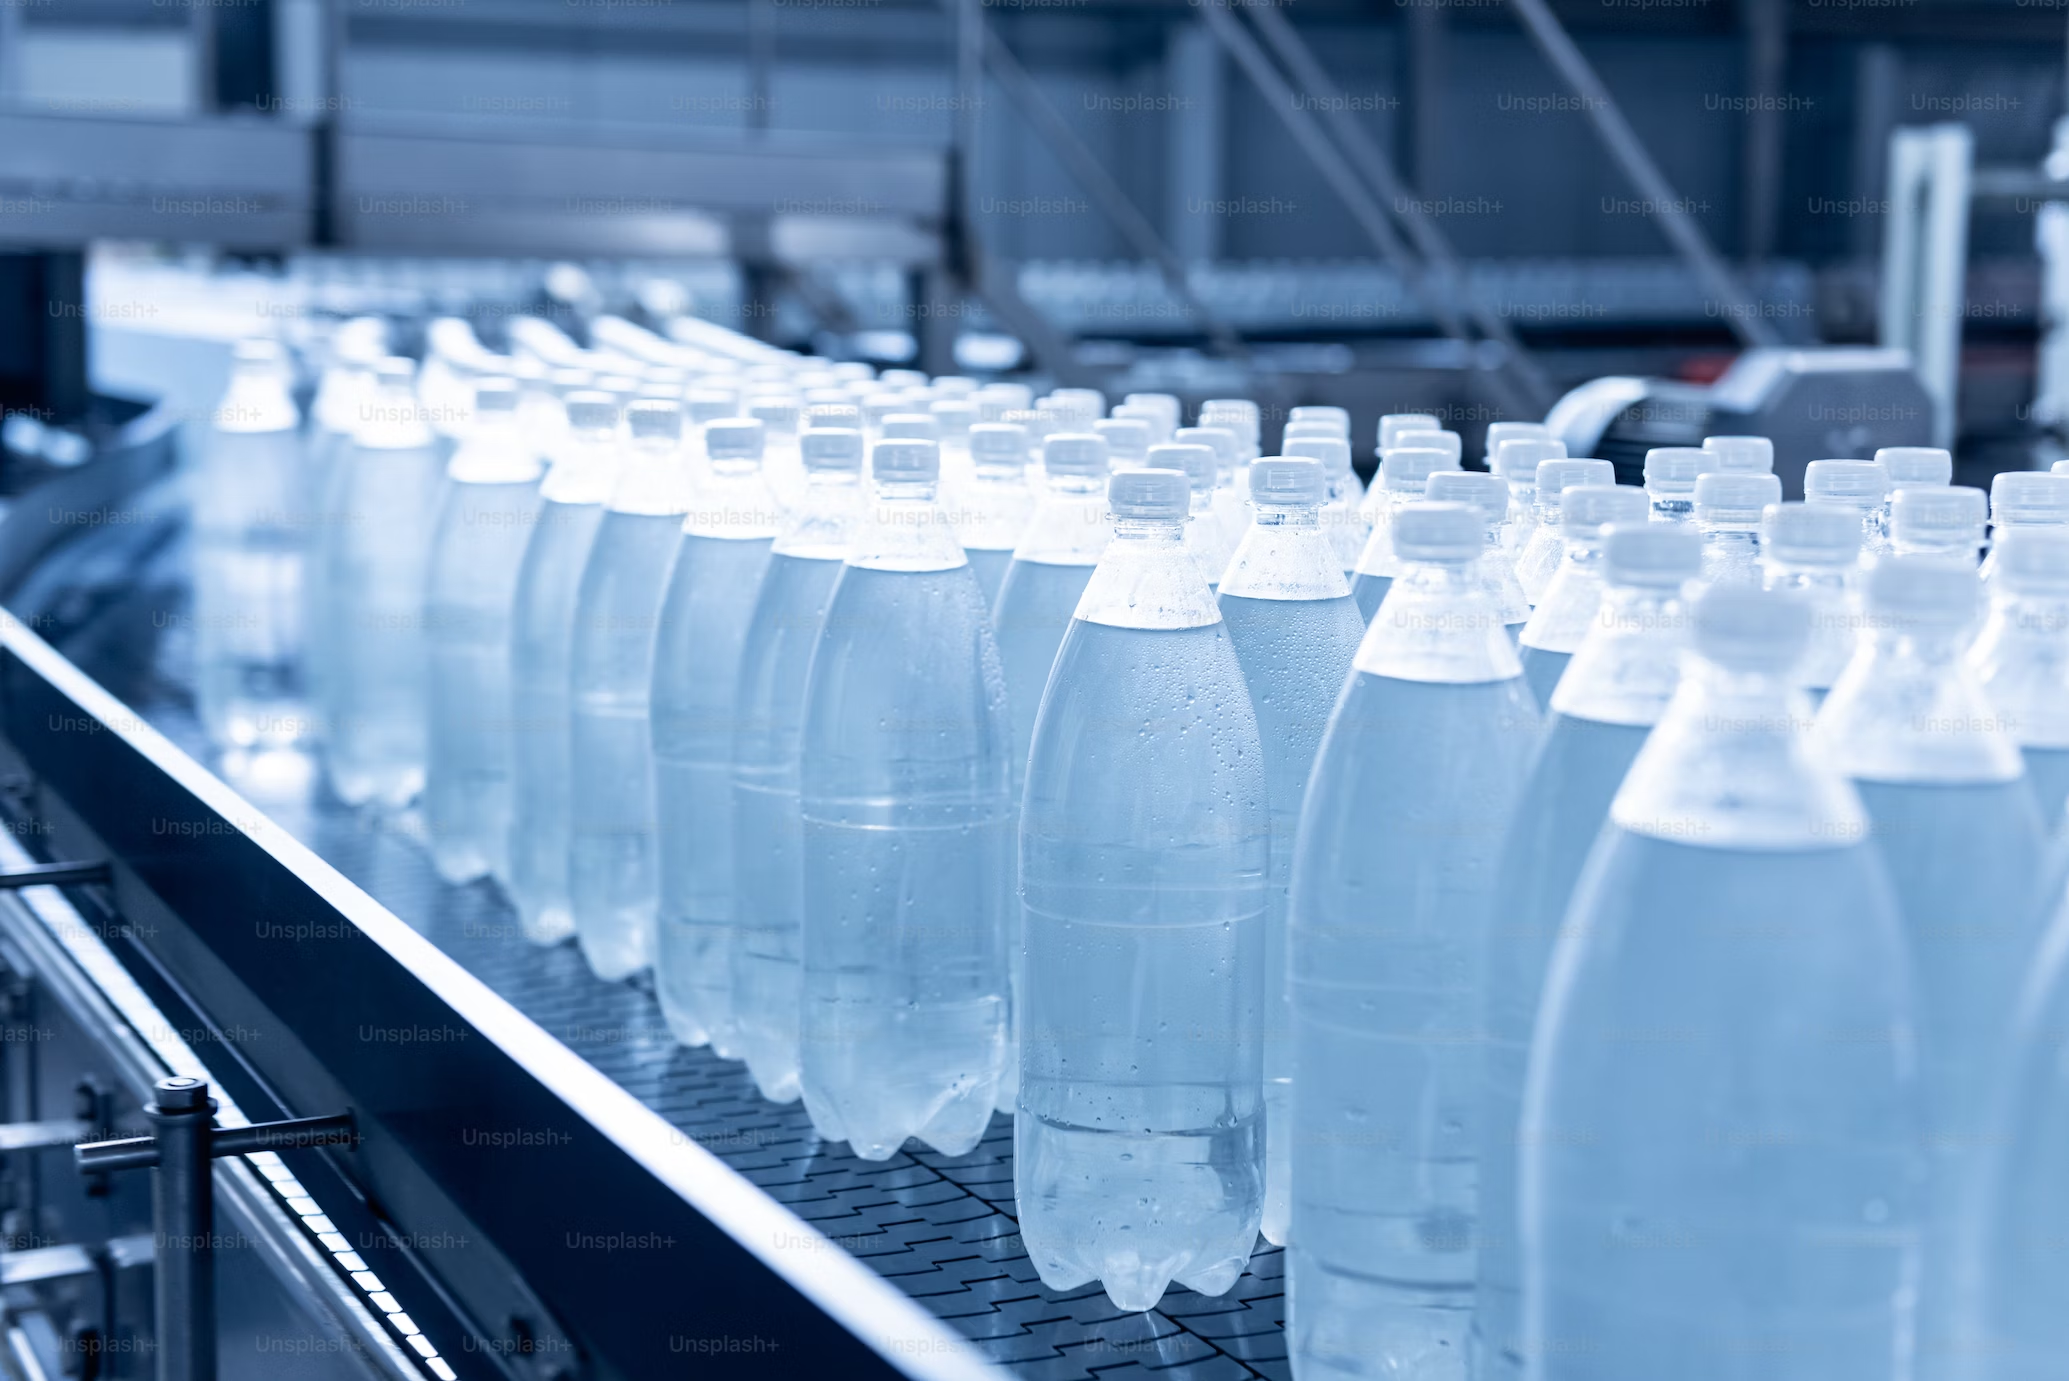 Hersteller von Einweg-Plastikflaschen müssen Pfand erheben